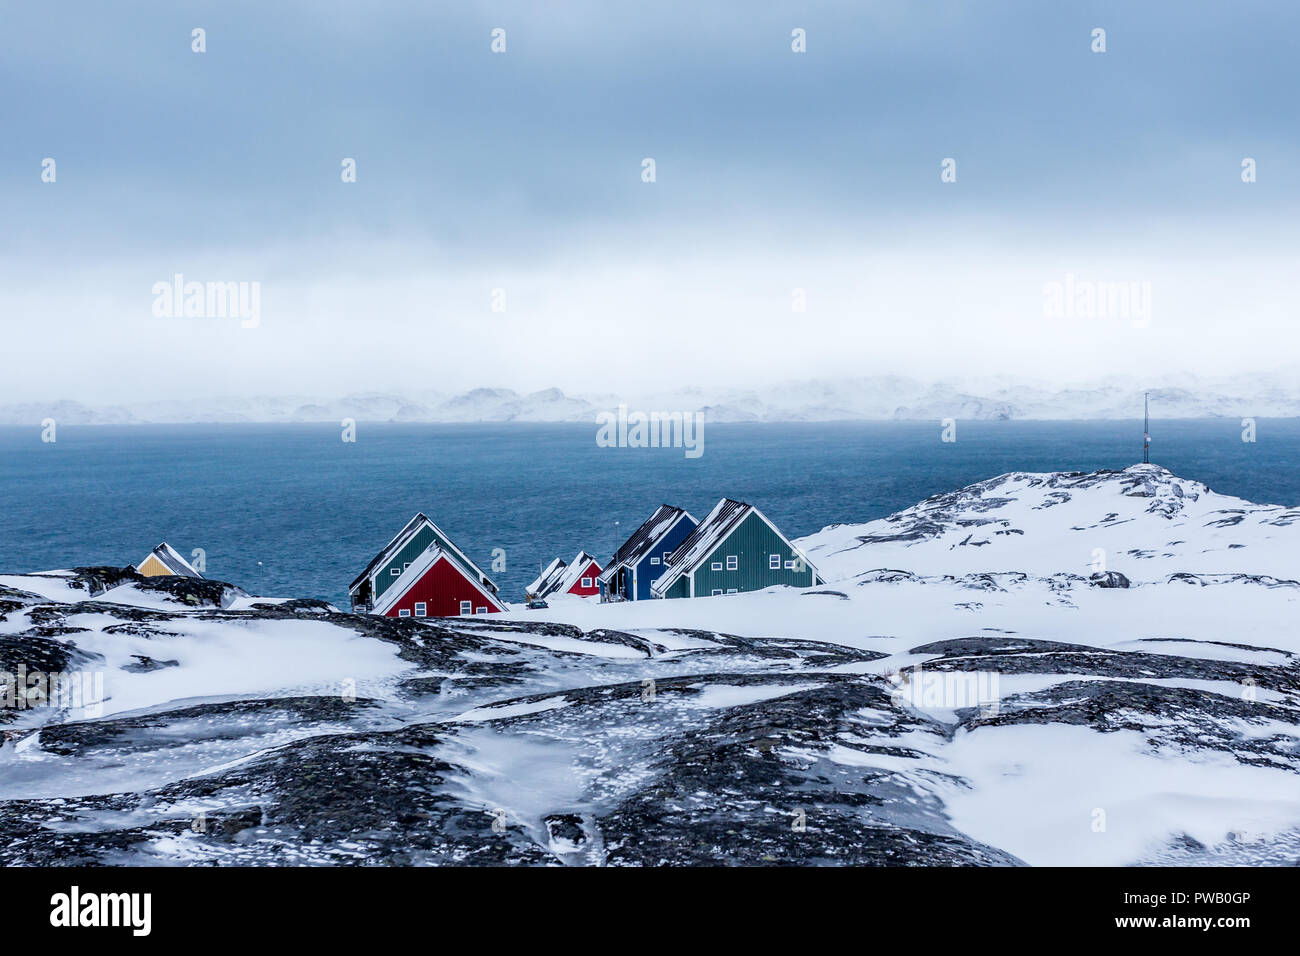 Rangées de maisons colorées des inuits se cachant dans les rochers avec fjord en arrière-plan, banlieue de la capitale de l'Arctique Nuuk, Groenland Banque D'Images